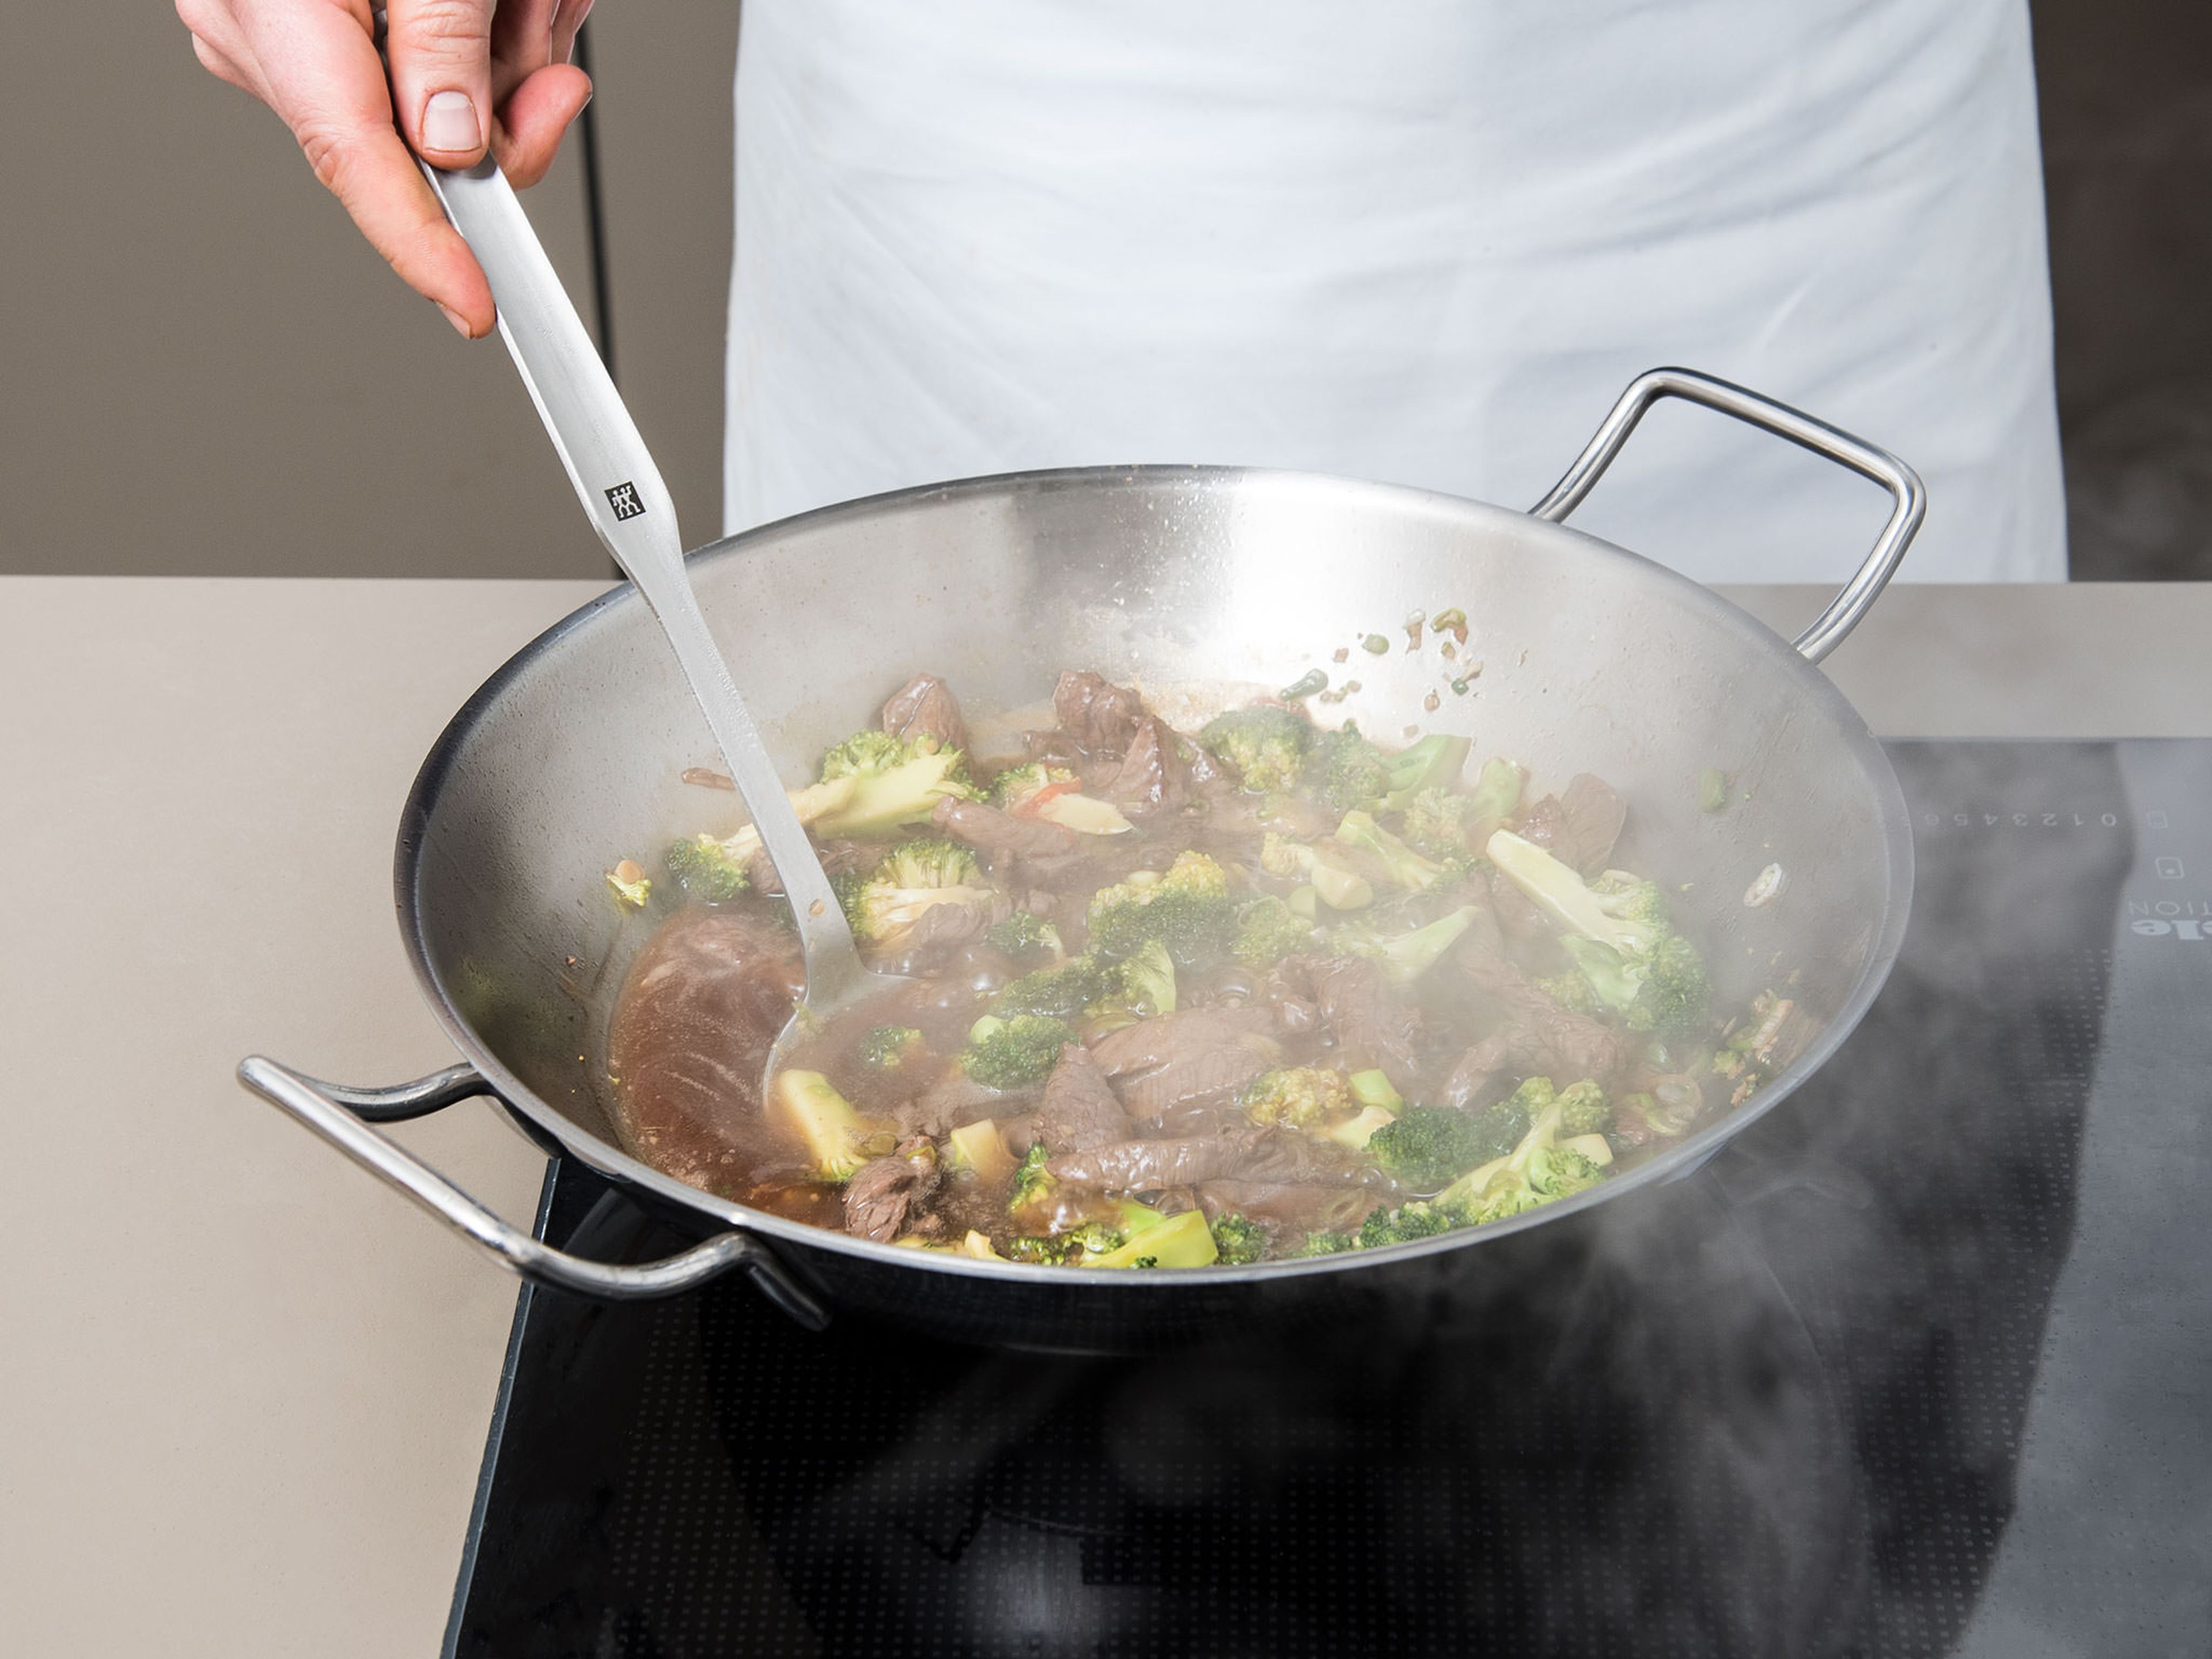 Rindfleischstreifen zurück in den Wok geben und Soße hinzufügen. Alles gut vermengen und ca. 5 Min. einkochen lassen, bzw. bis die Soße eindickt. Guten Appetit!